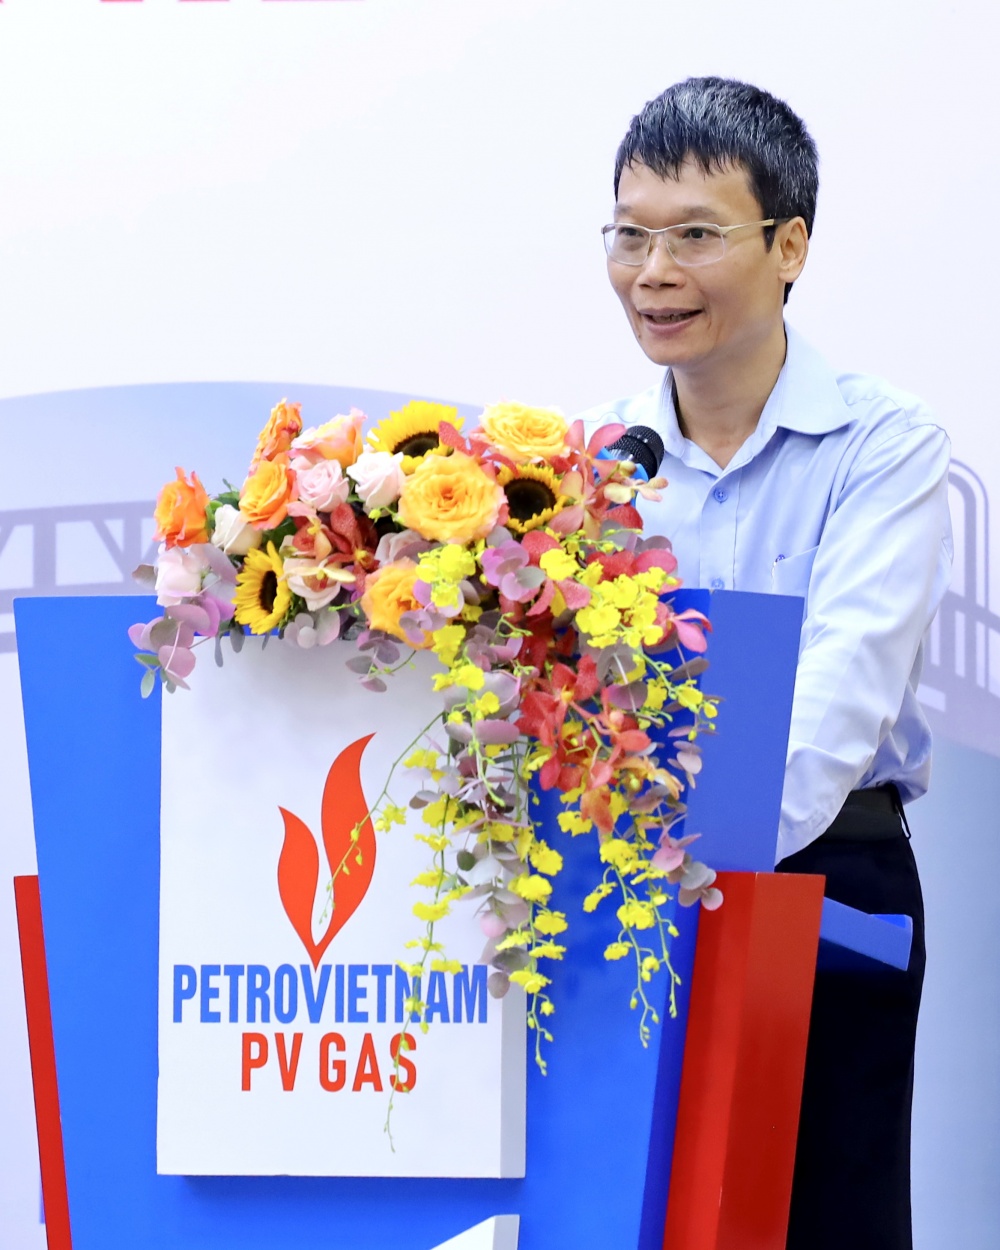 ông Trương Hồng Sơn – Thành viên HĐQT PV GAS phát biểu chúc mừng quá trình chạy thử chuỗi dự án Kho cảng LNG Thị Vải đã hoàn thành thắng lợi